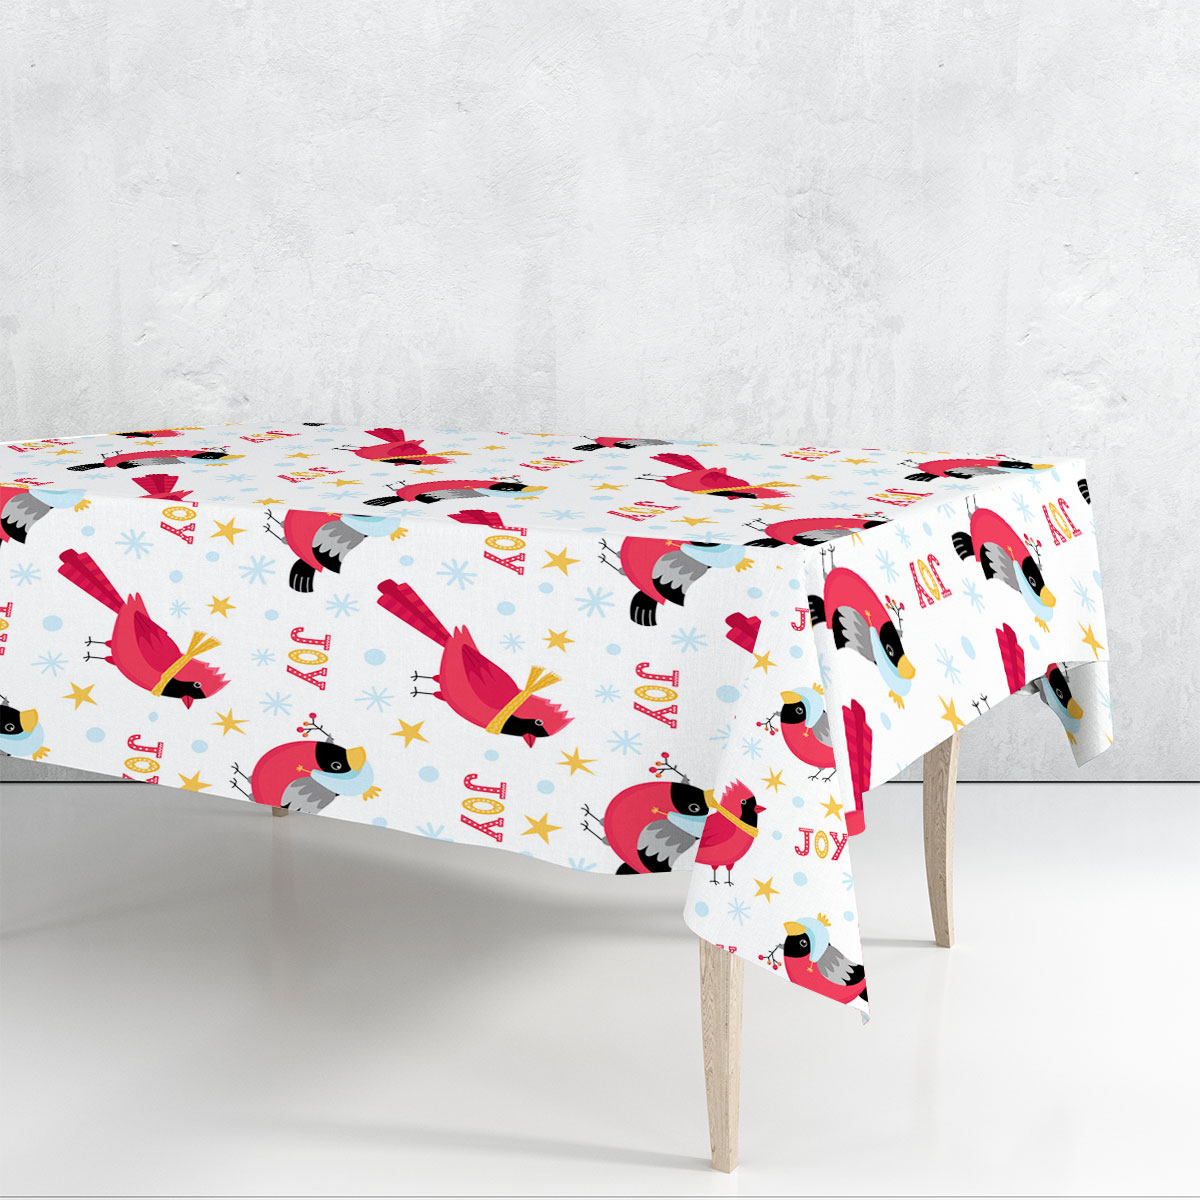 Joyful Winter Cardinal Rectangle Tablecloth